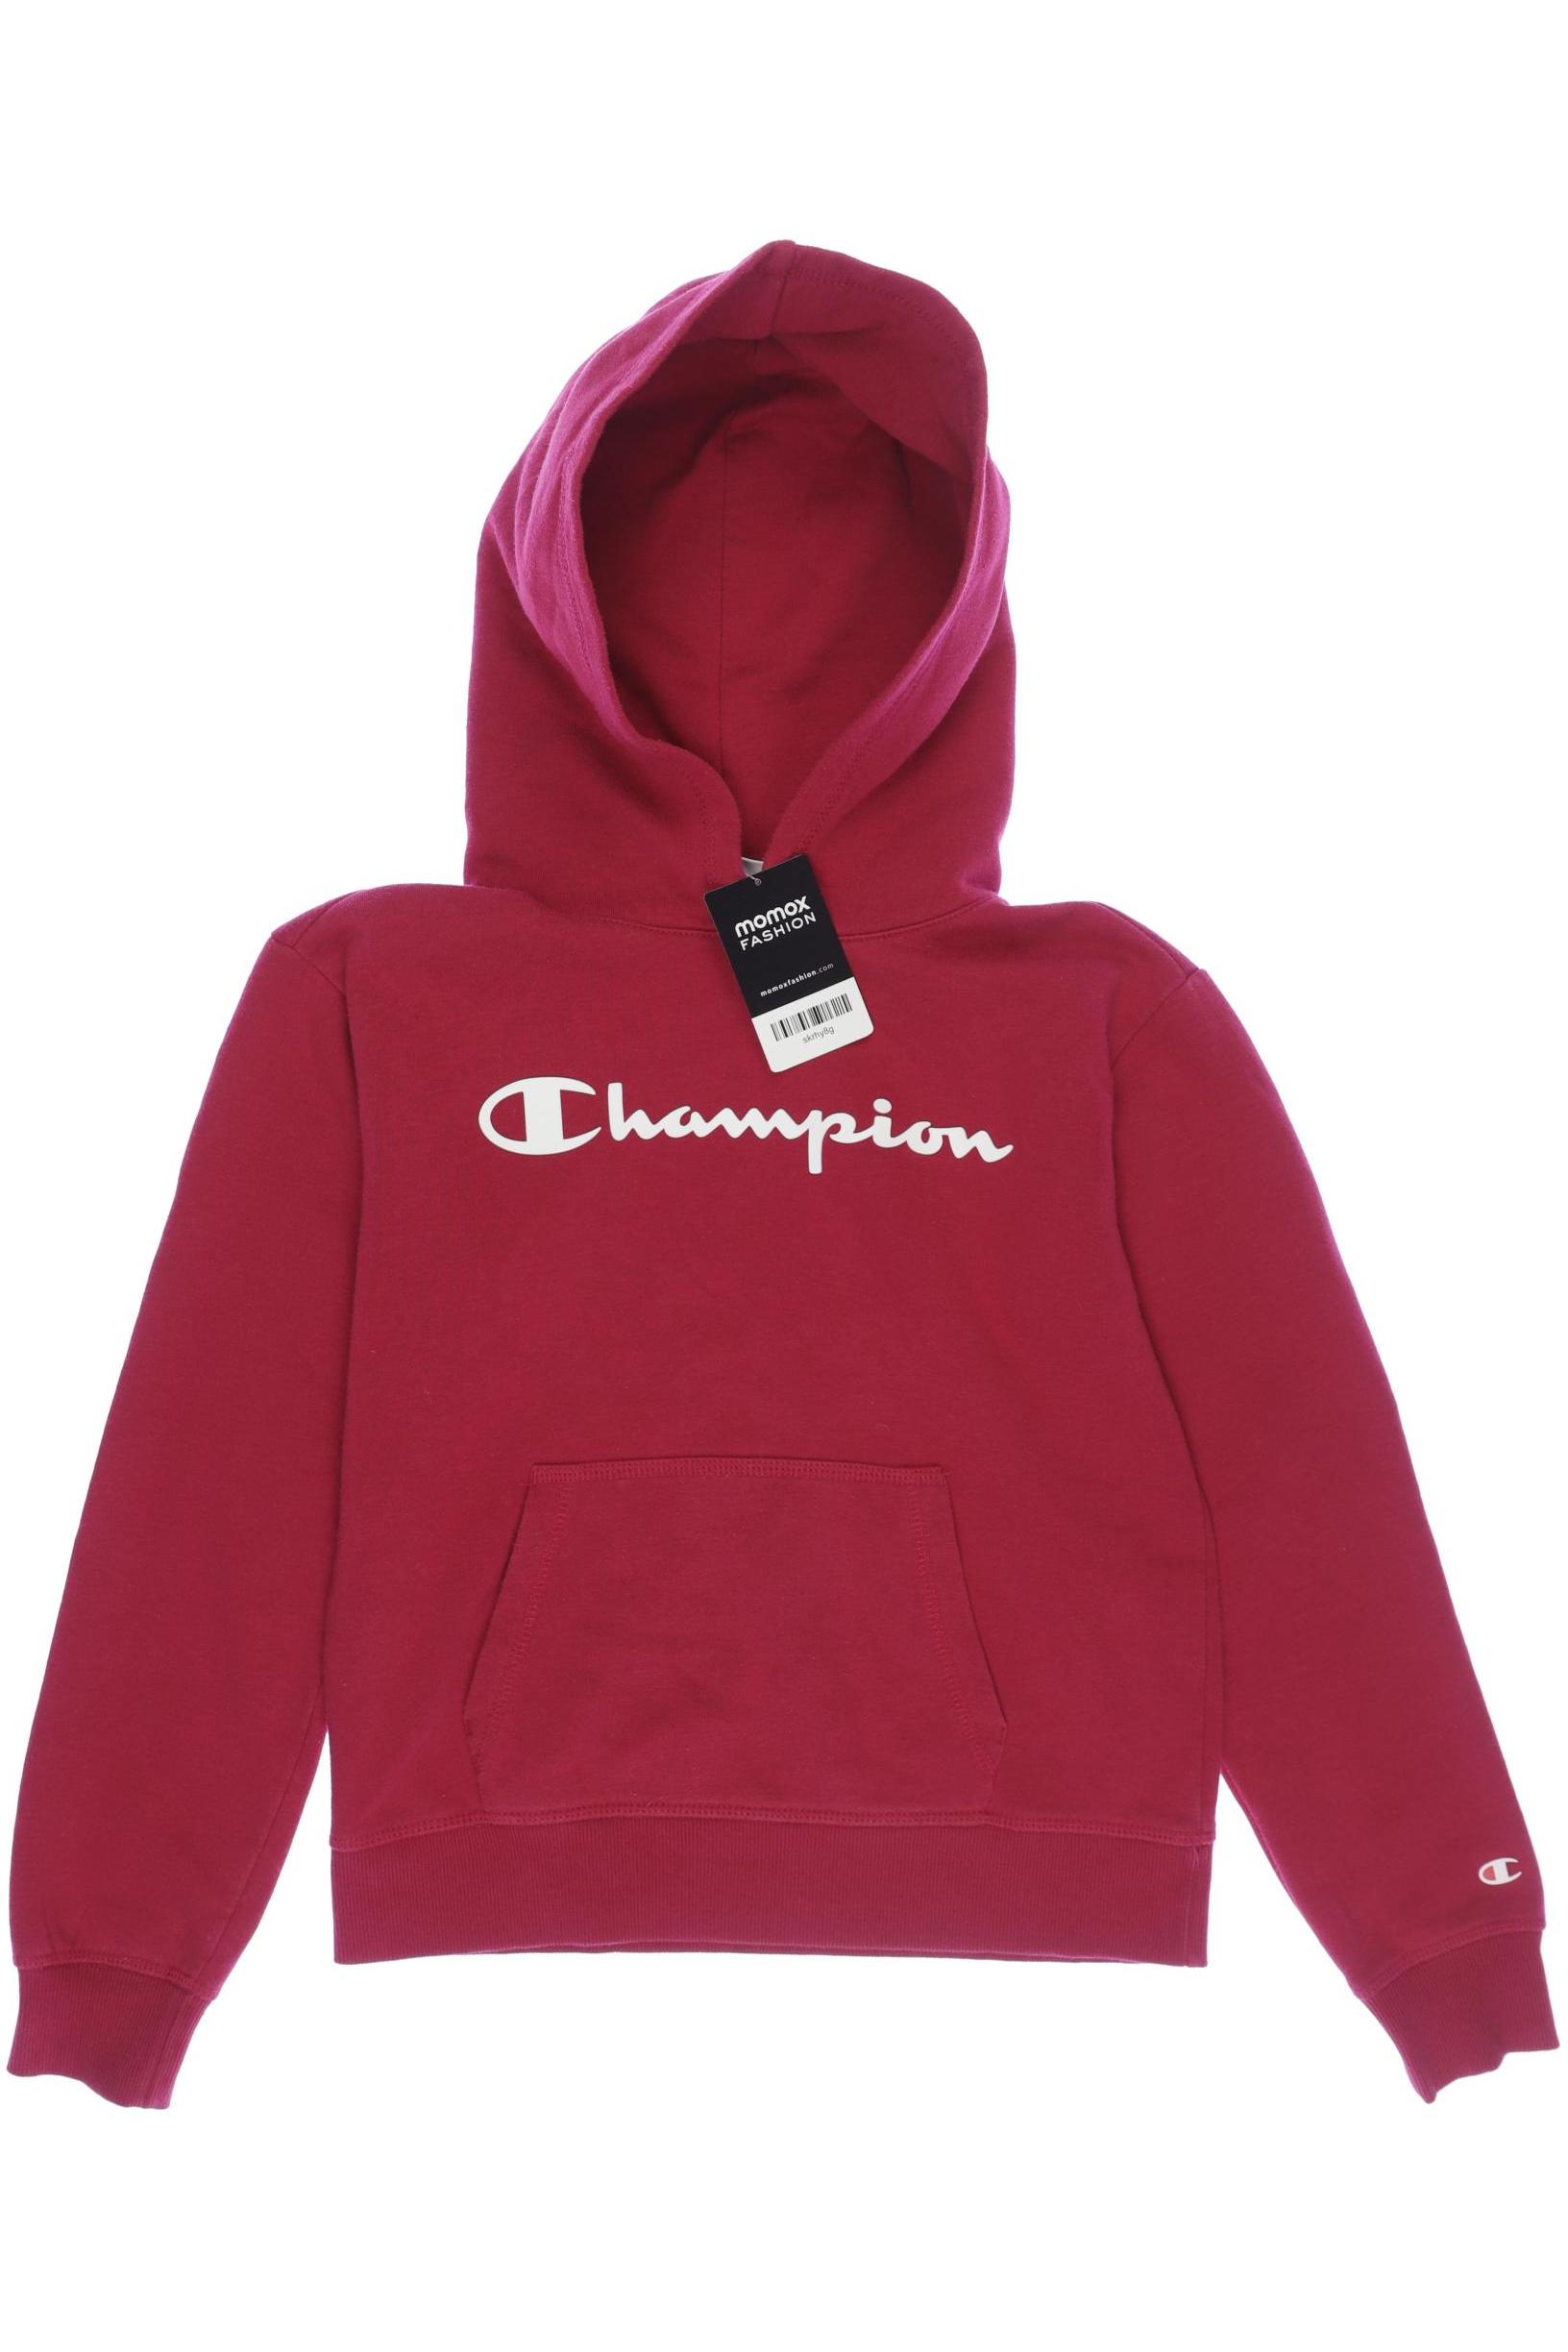 Champion Damen Hoodies & Sweater, pink, Gr. 158 von Champion